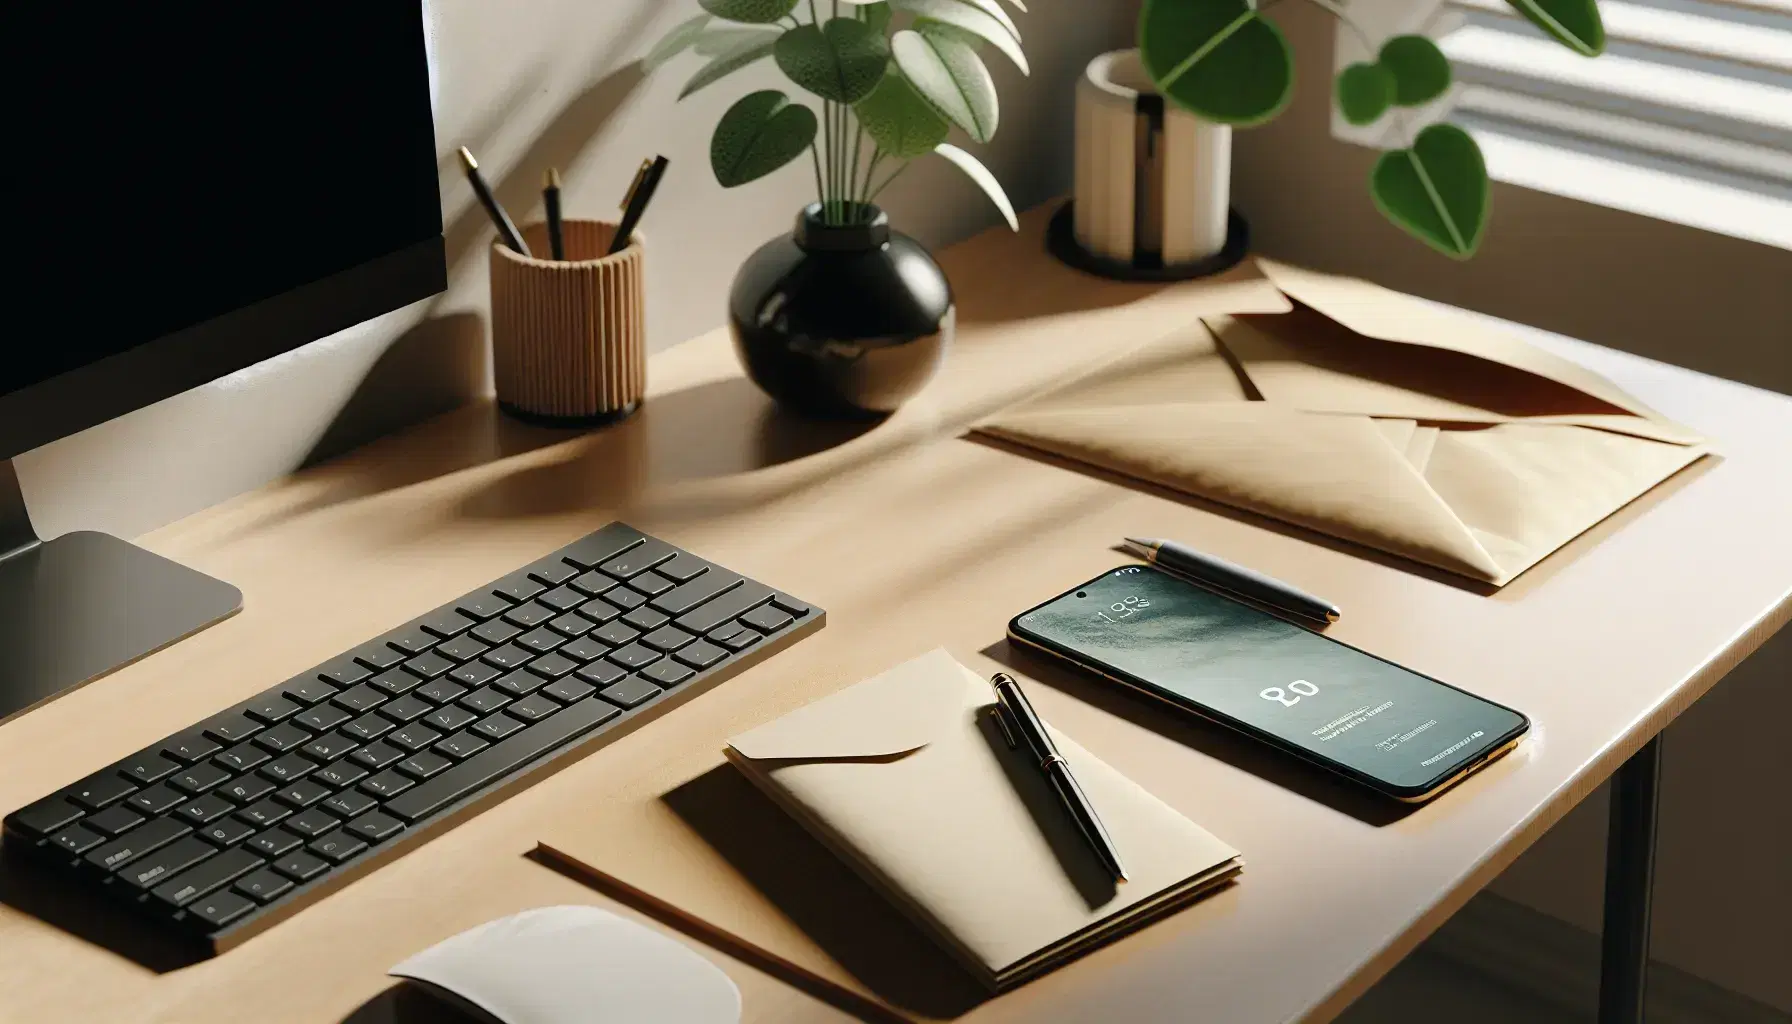 Escritorio de madera claro con teclado negro, smartphone boca abajo, sobre y bolígrafo azul oscuro, junto a planta verde en maceta blanca, ambiente de trabajo ordenado.